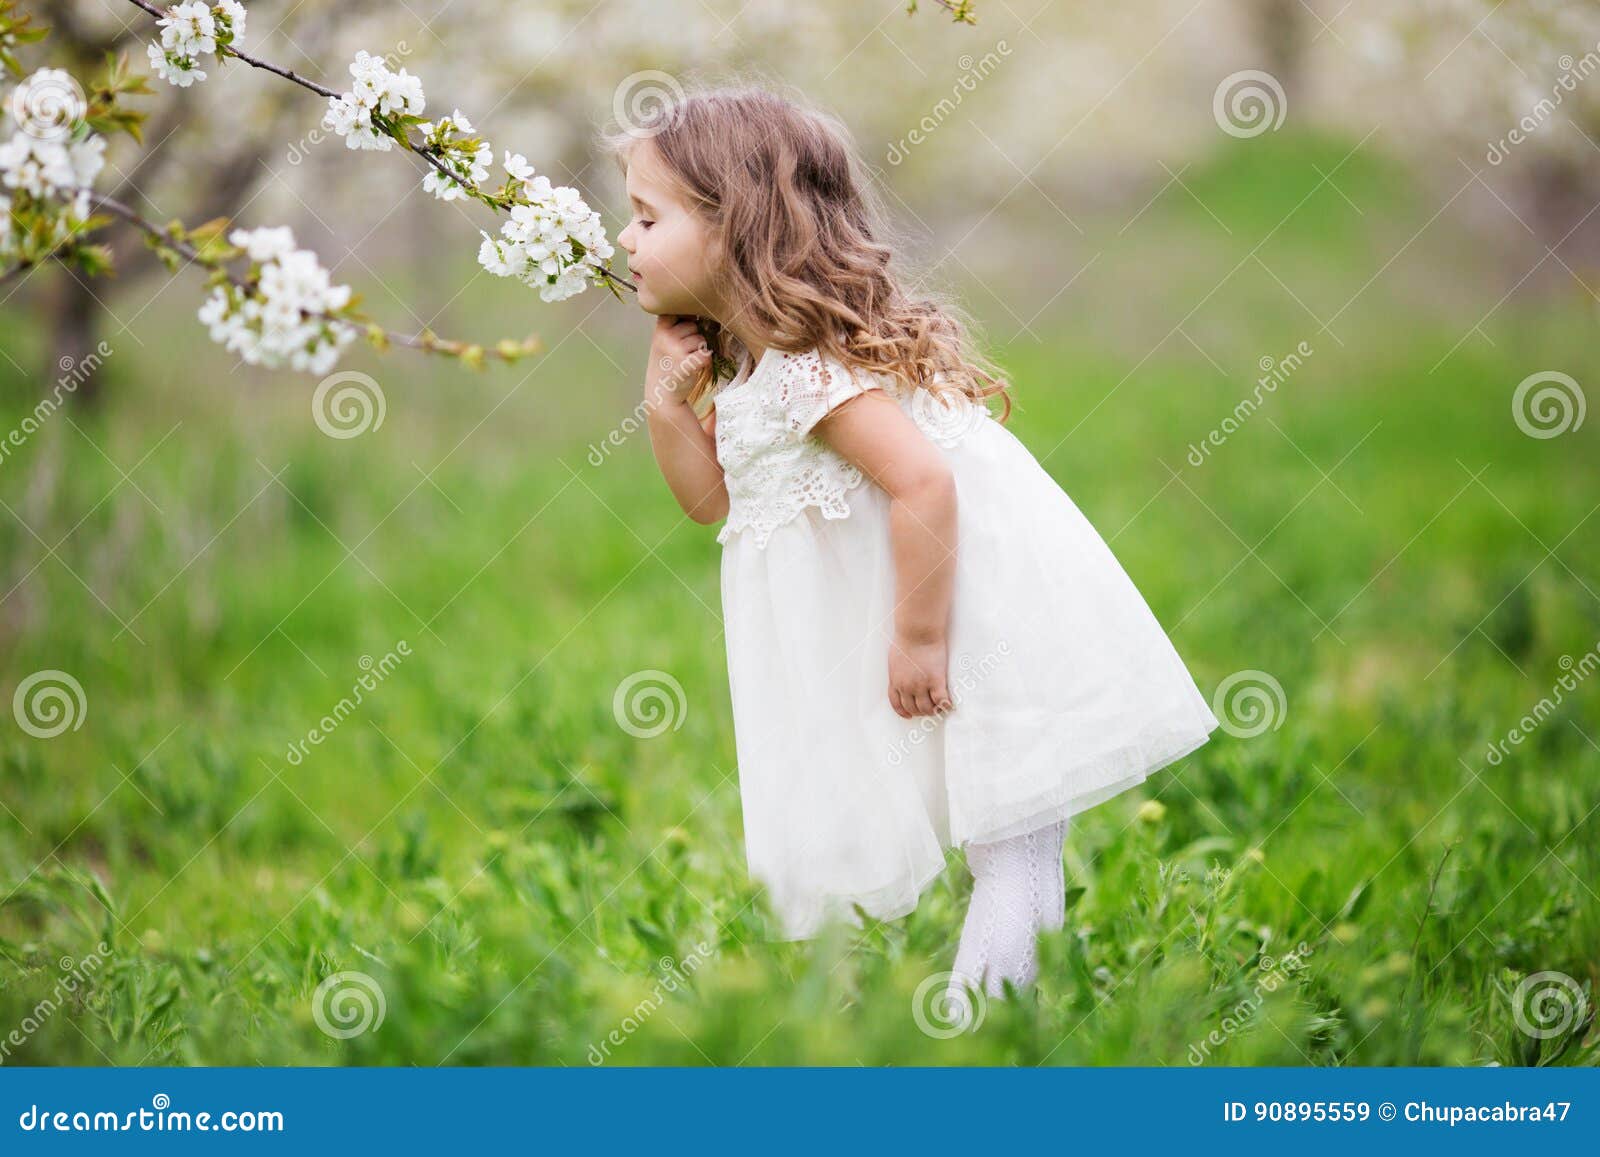 Petite Fille 5 Ans De Blonde Sentant Une Fleur Pendant L'été Photo stock -  Image du cheveu, jour: 91030876